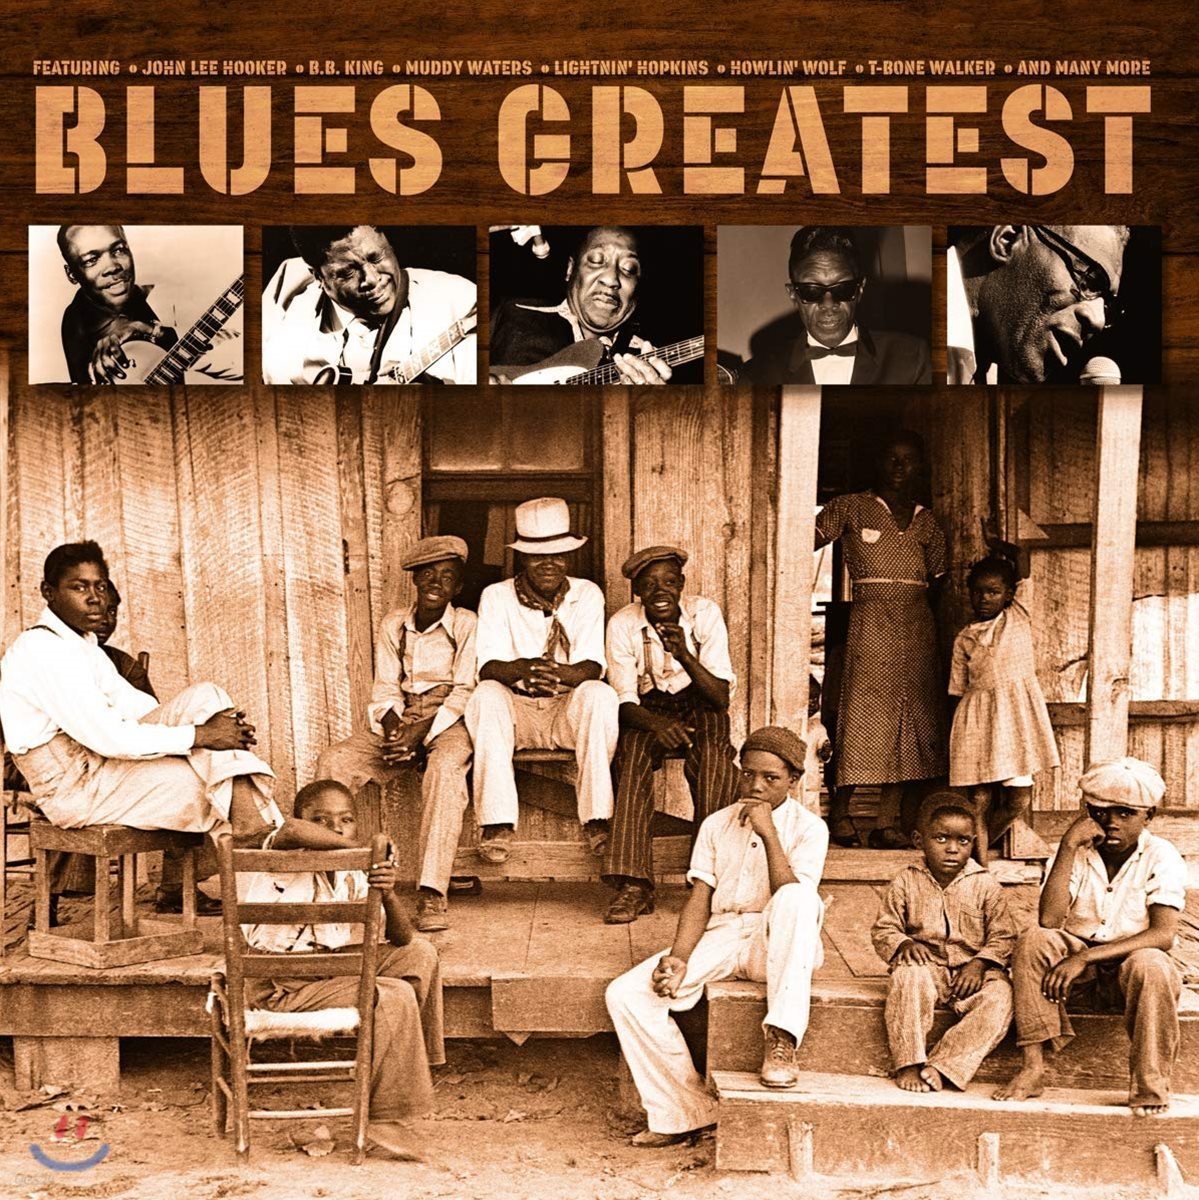 블루스 명곡 모음집 (Blues Greatest - Best of Blues) [LP]